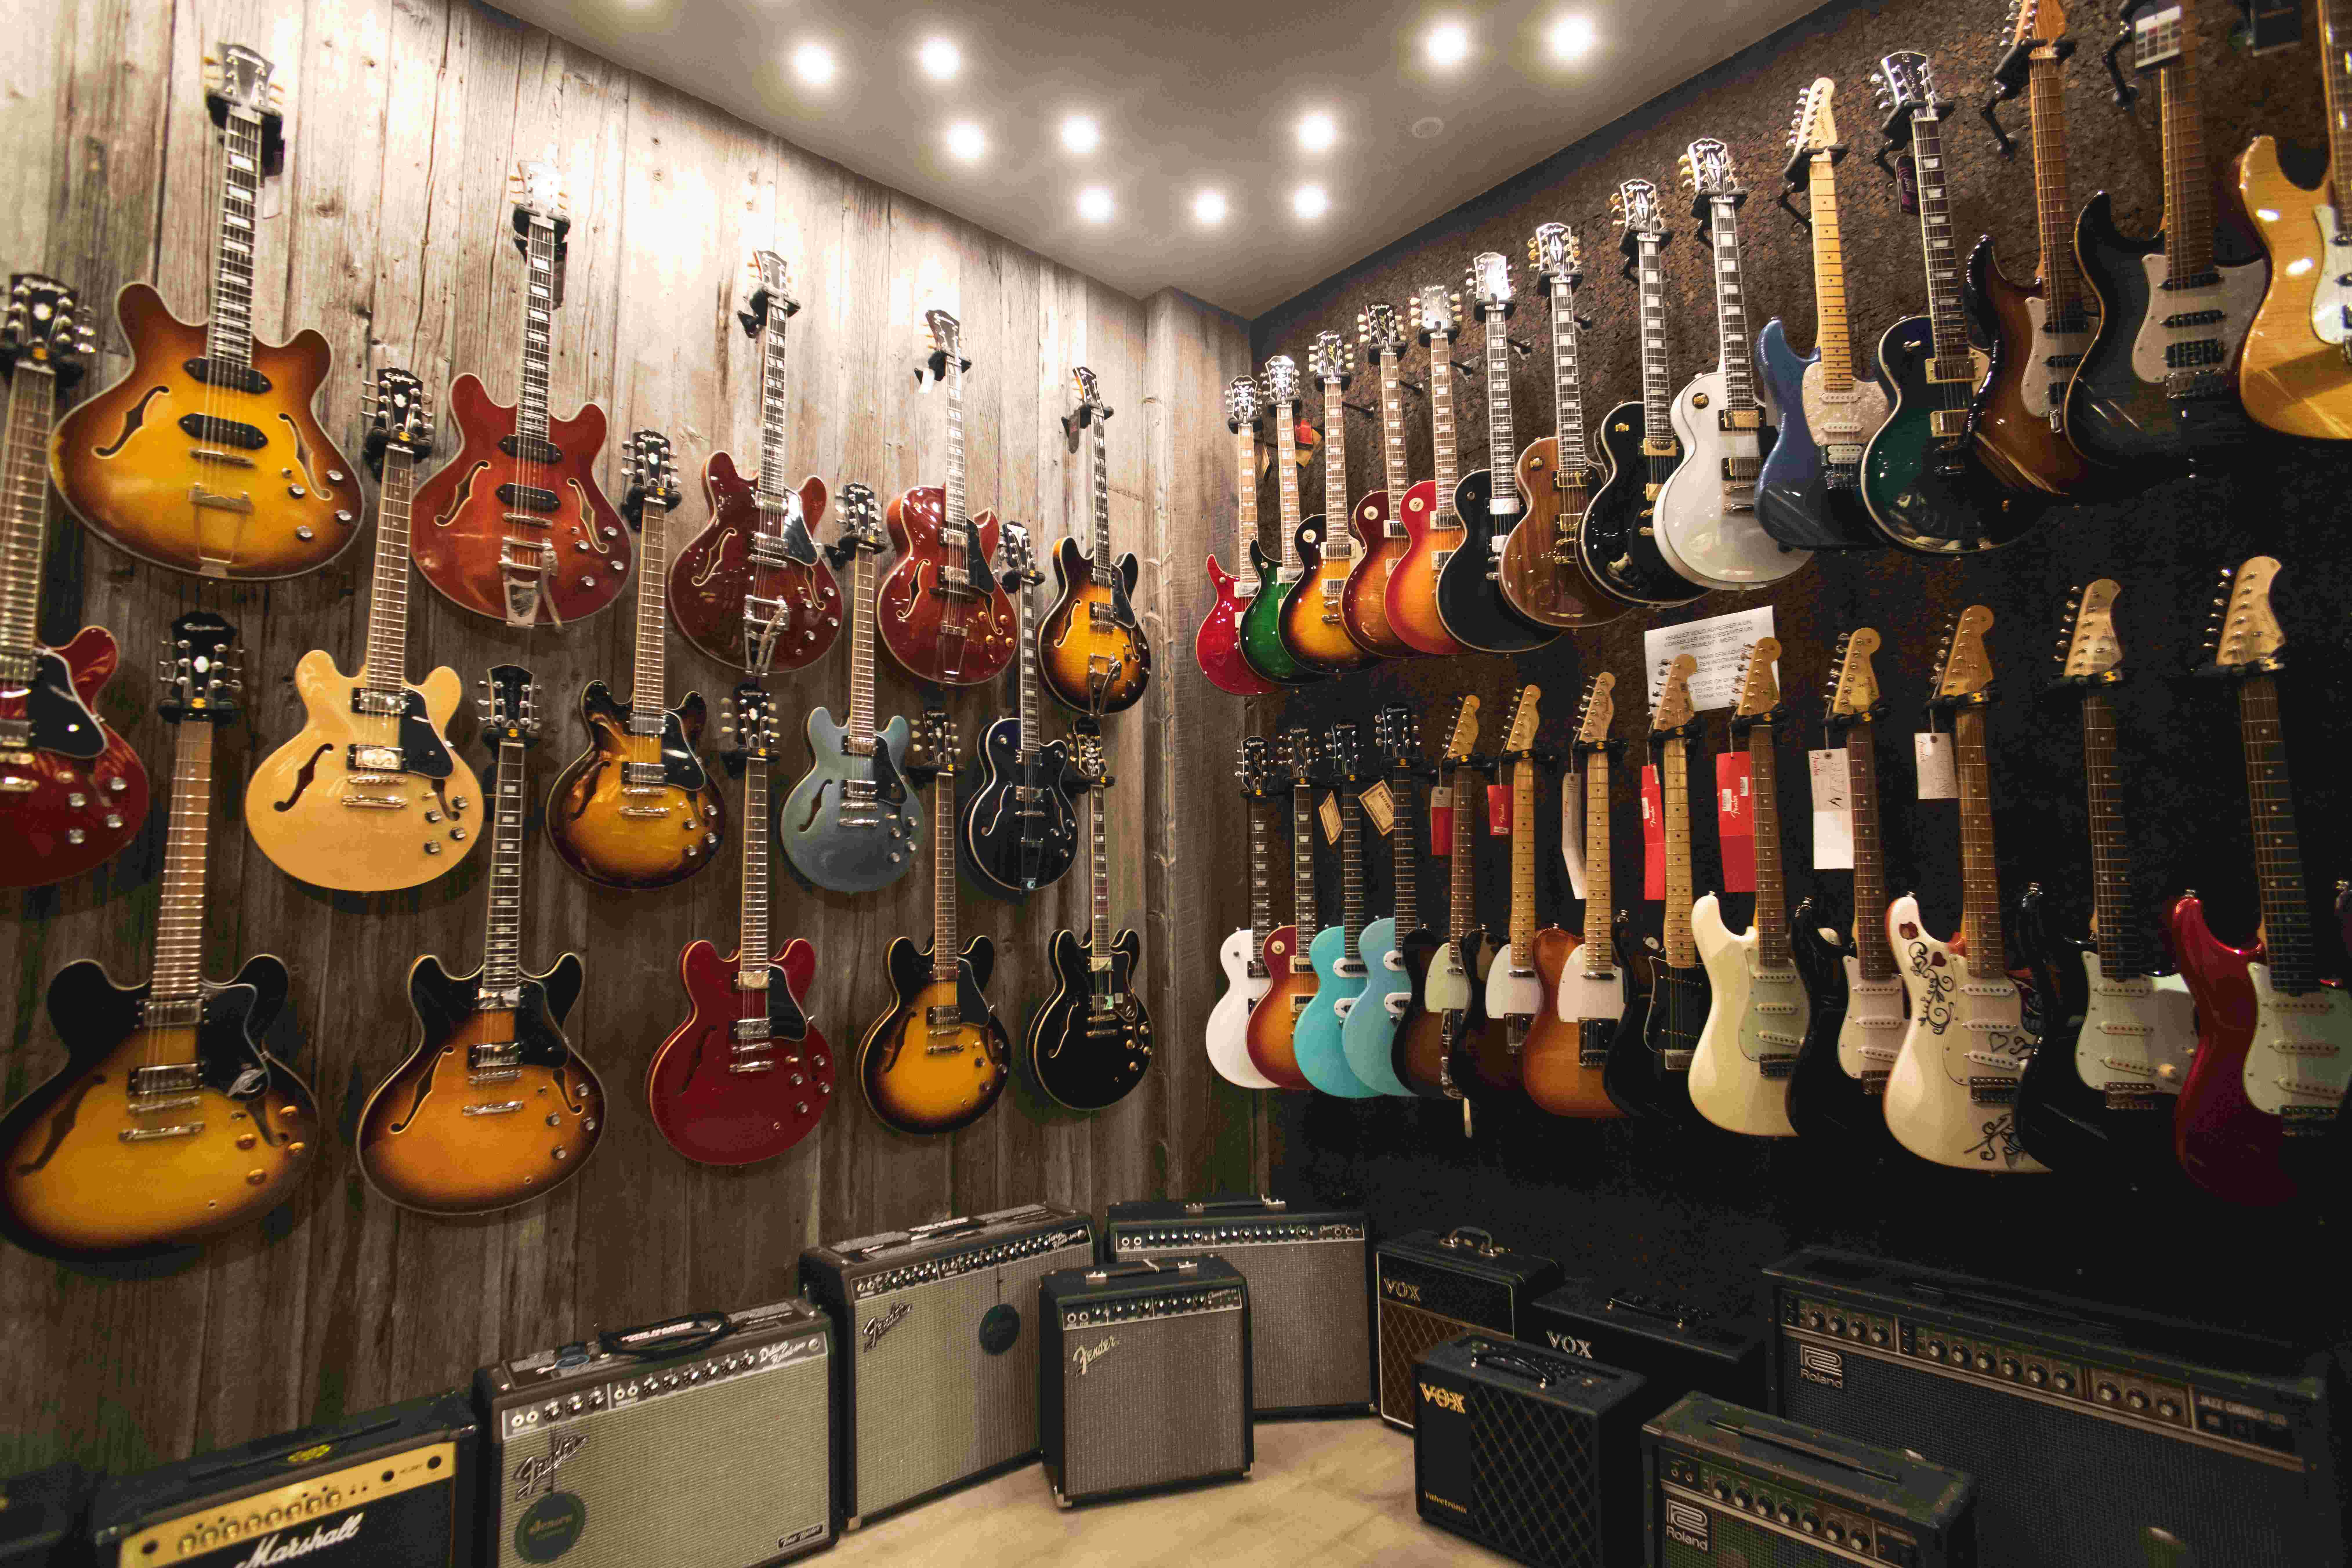 Kruiden stroomkring Moment Brussel heeft met Star's Music een bijzondere gitaarwinkel in huis -  Gitarist.nl